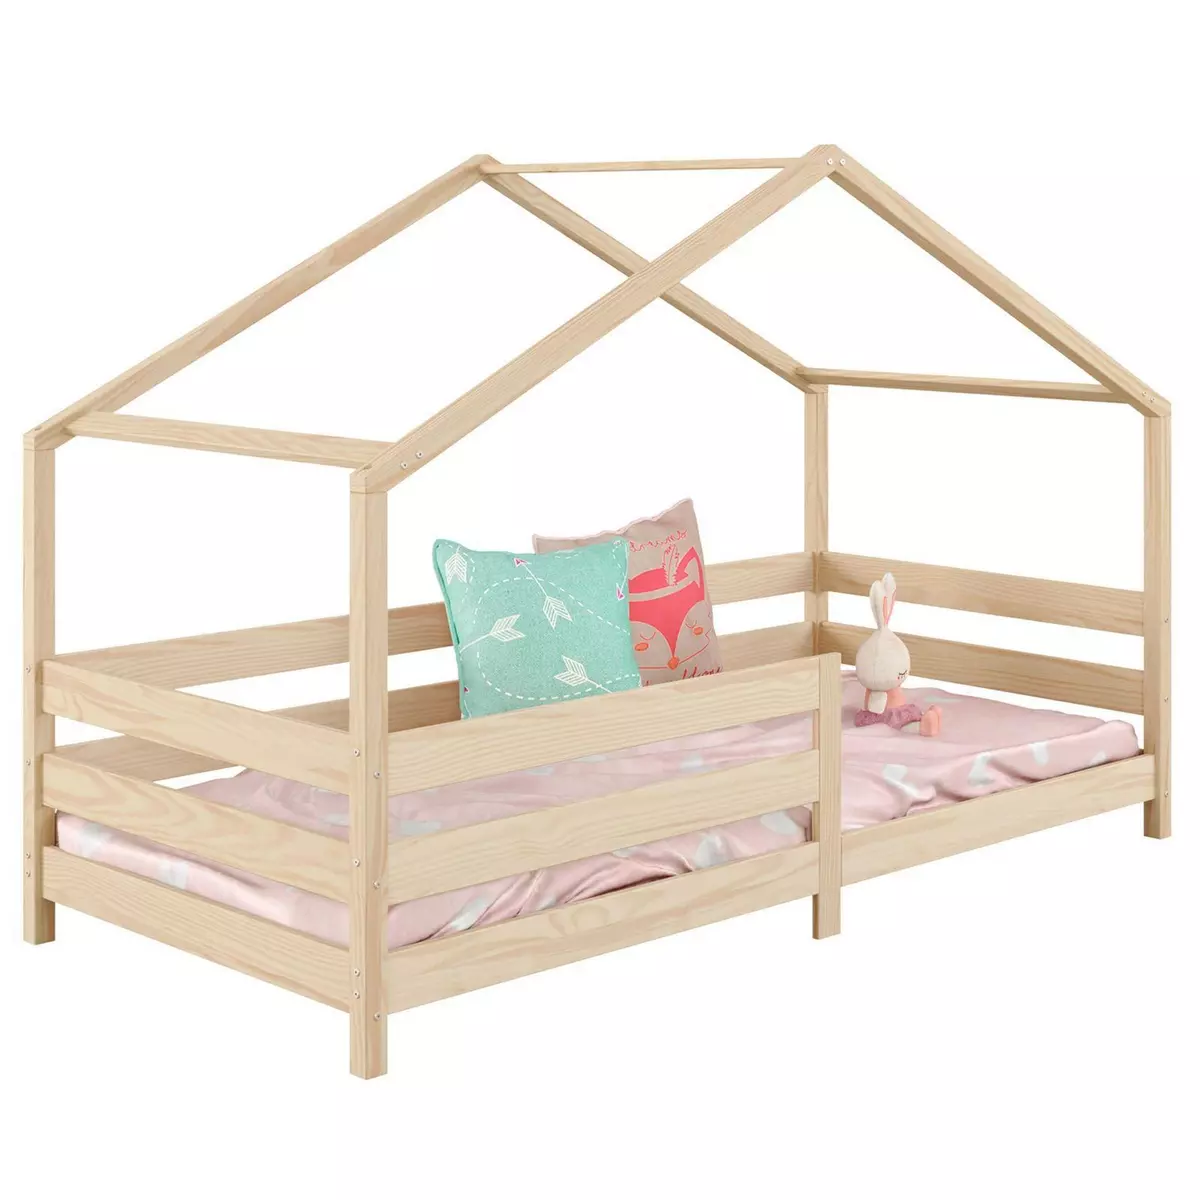 IDIMEX Lit cabane RENA lit simple montessori pour enfant 90 x 190 cm, avec barrières de protection, en pin massif à la finition naturelle